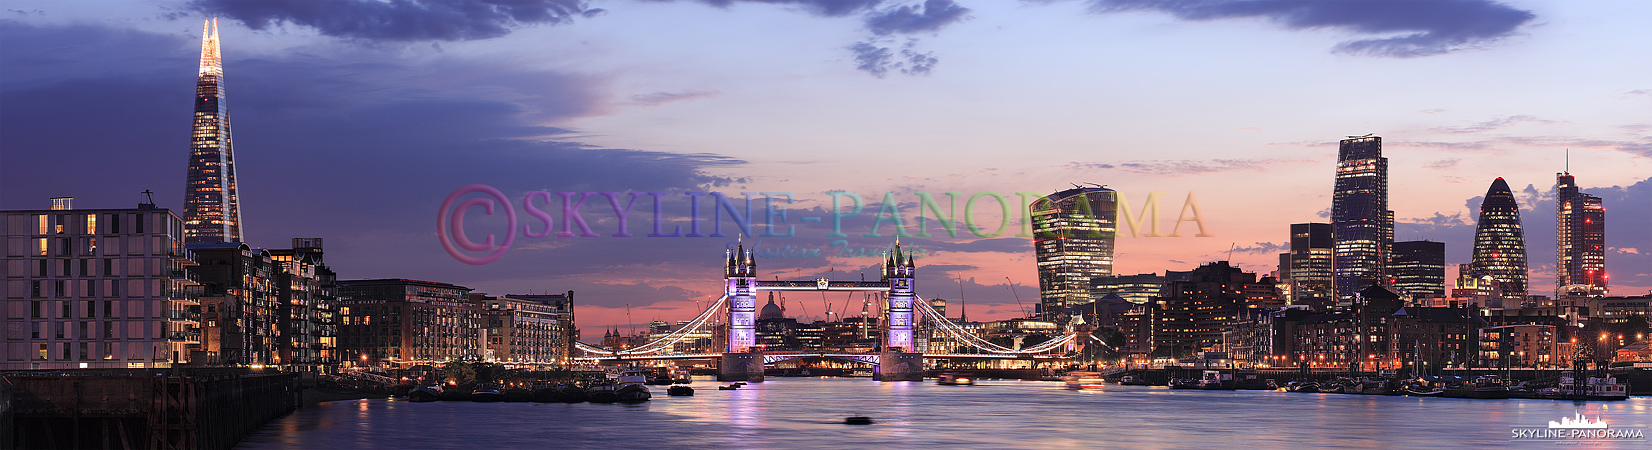 Skyline von London (p_00900)